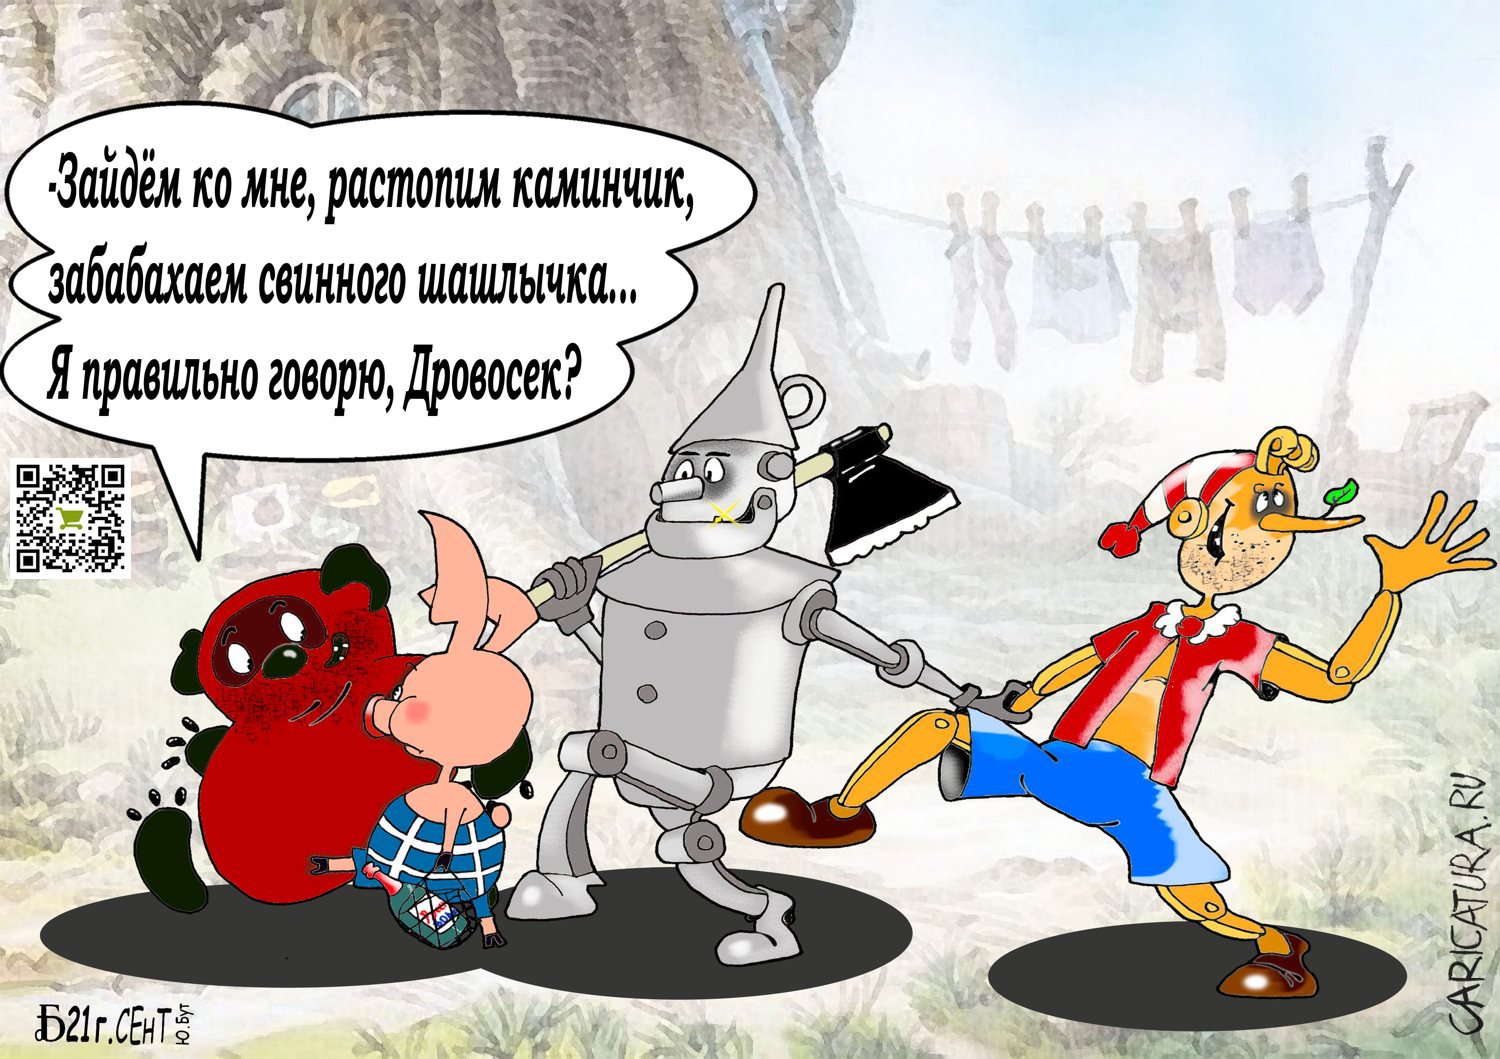 Карикатура "ПроВотКомпанияТакая", Борис Демин